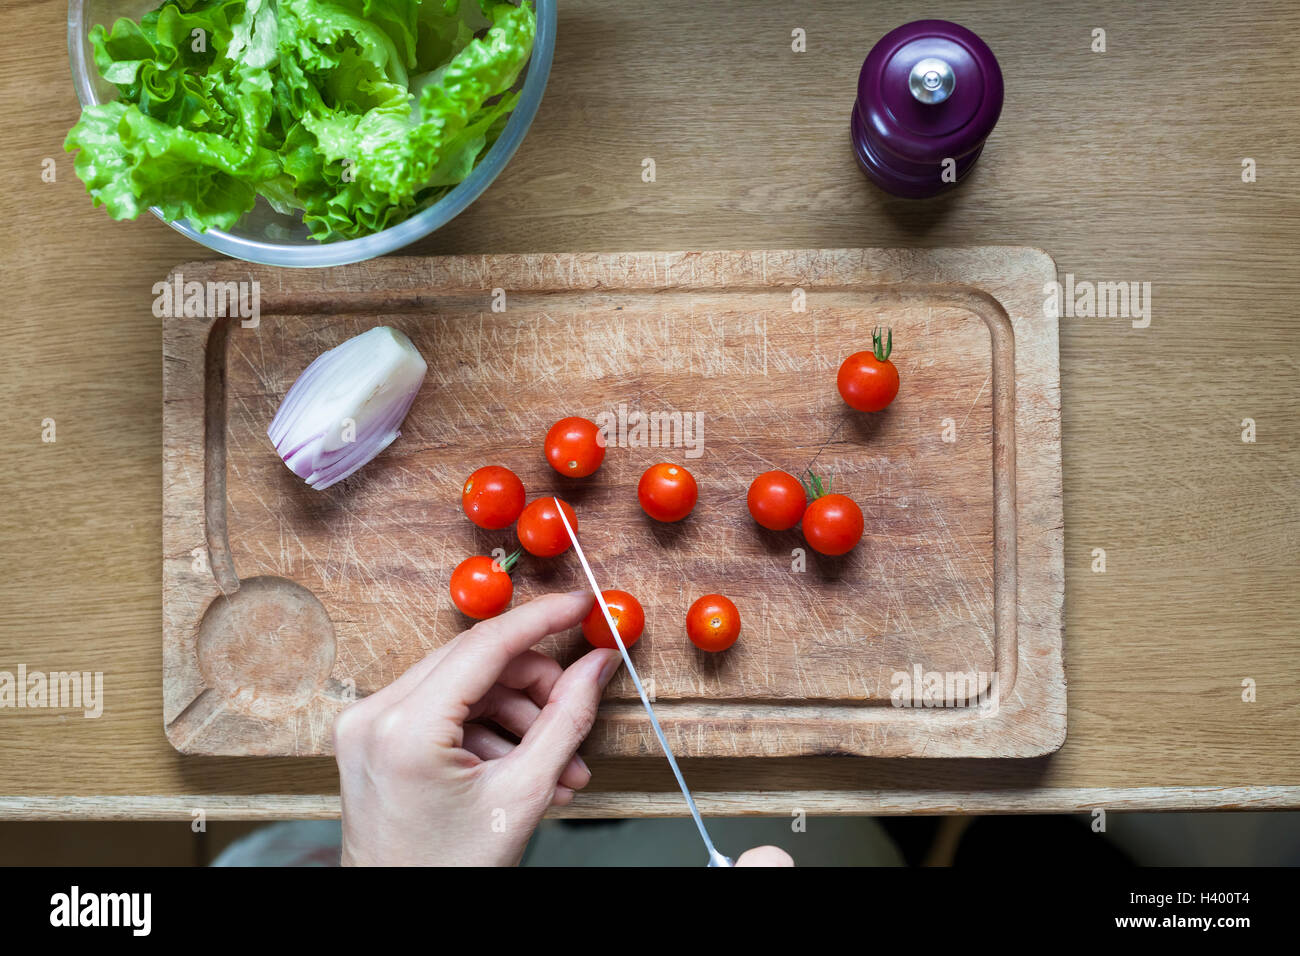 La préparation de salade saine pour l'alimentation à la maison avec des tomates cerises Banque D'Images